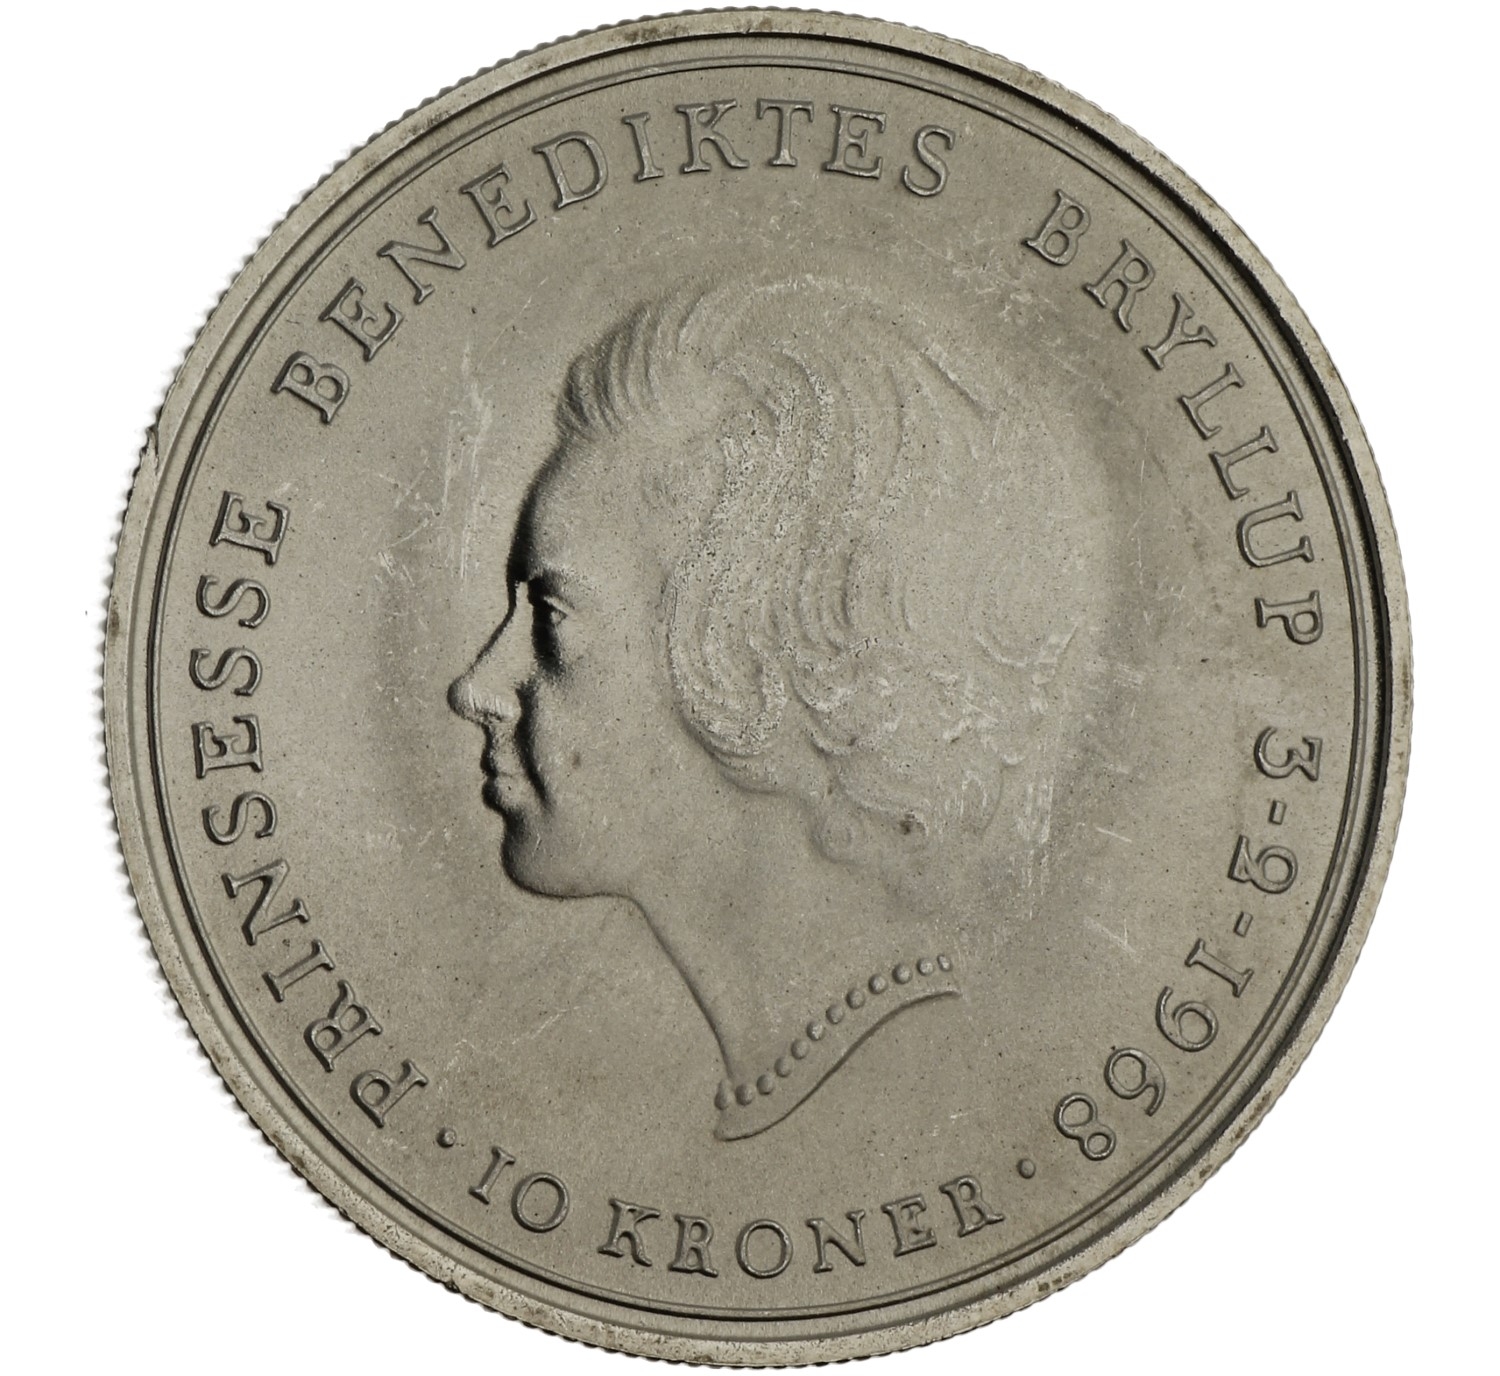 10 Kroner - Denmark - 1968